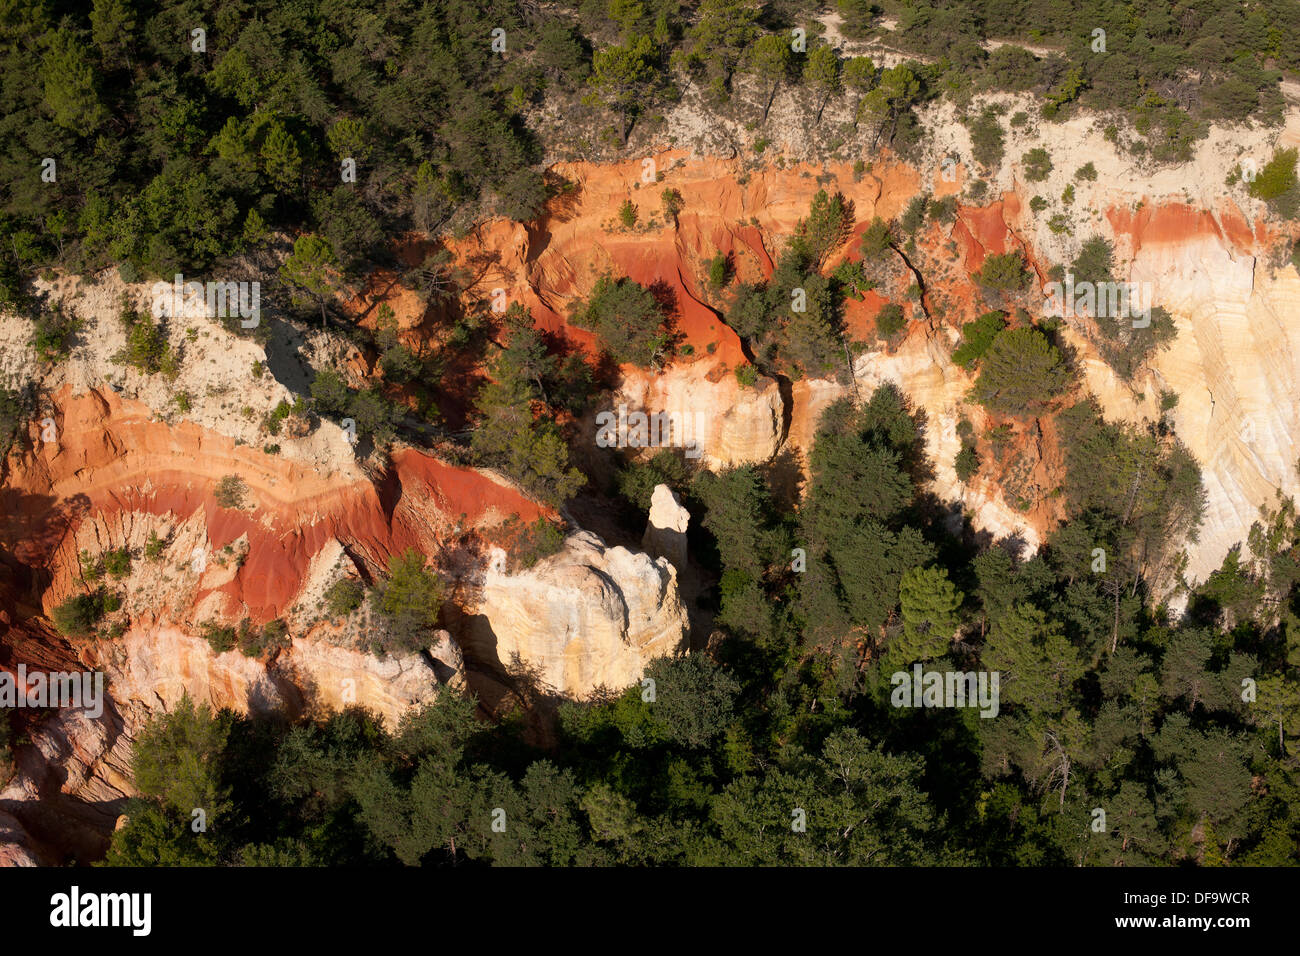 LUFTAUFNAHME. Klippe mit bunten Ockerschichten in scharfem Kontrast zum umgebenden Baldachin. Rustrel, Lubéron, Vaucluse, Provence, Frankreich. Stockfoto